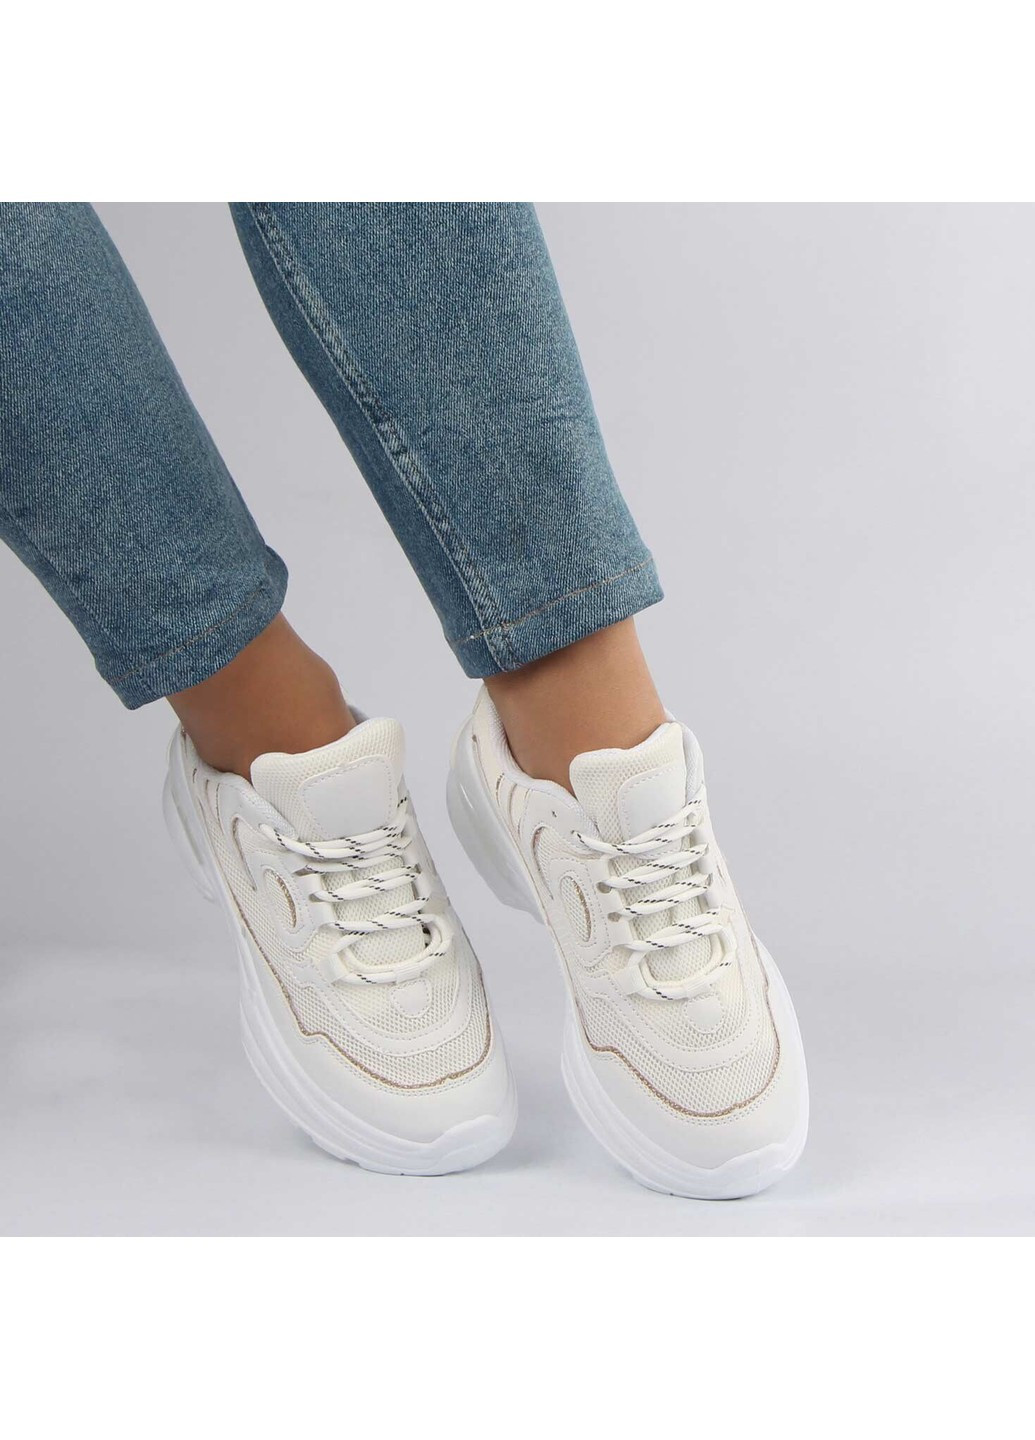 Белые демисезонные женские кроссовки 196276 Meglias